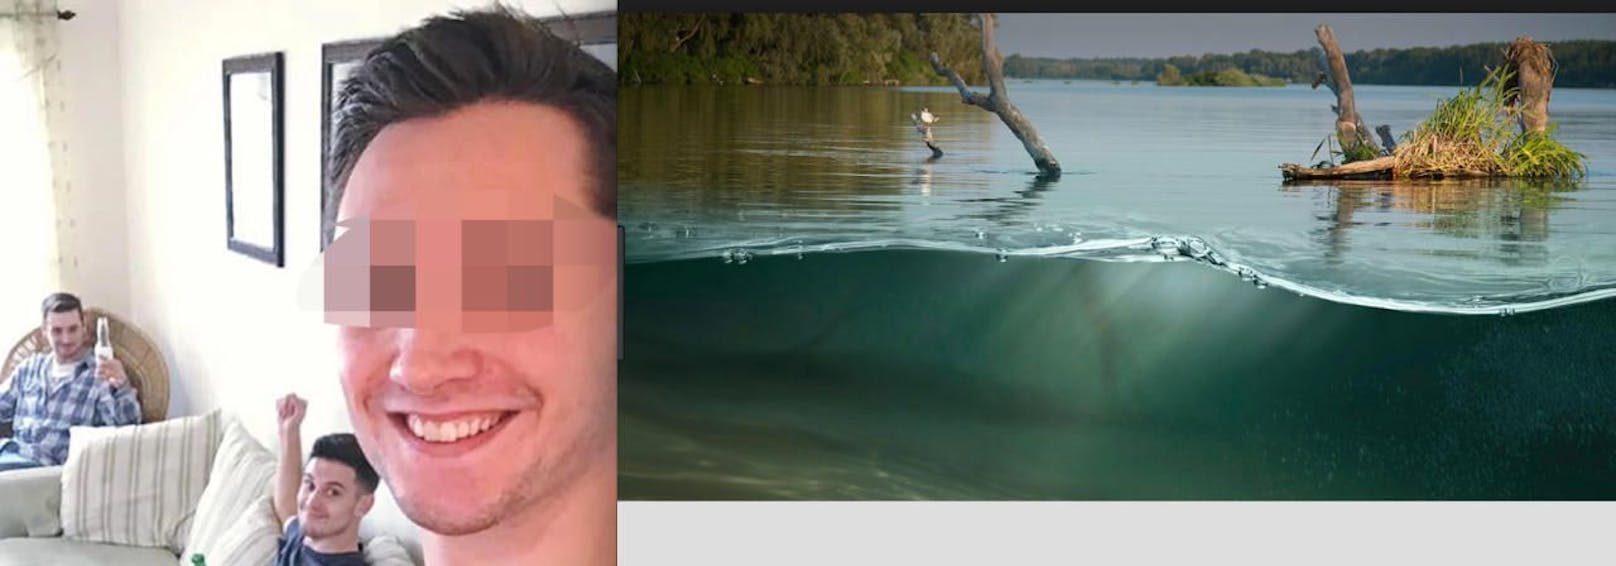 Tragisch: Robert B. (23) ertrank im Lake Sinclair bei einem Partyspiel.